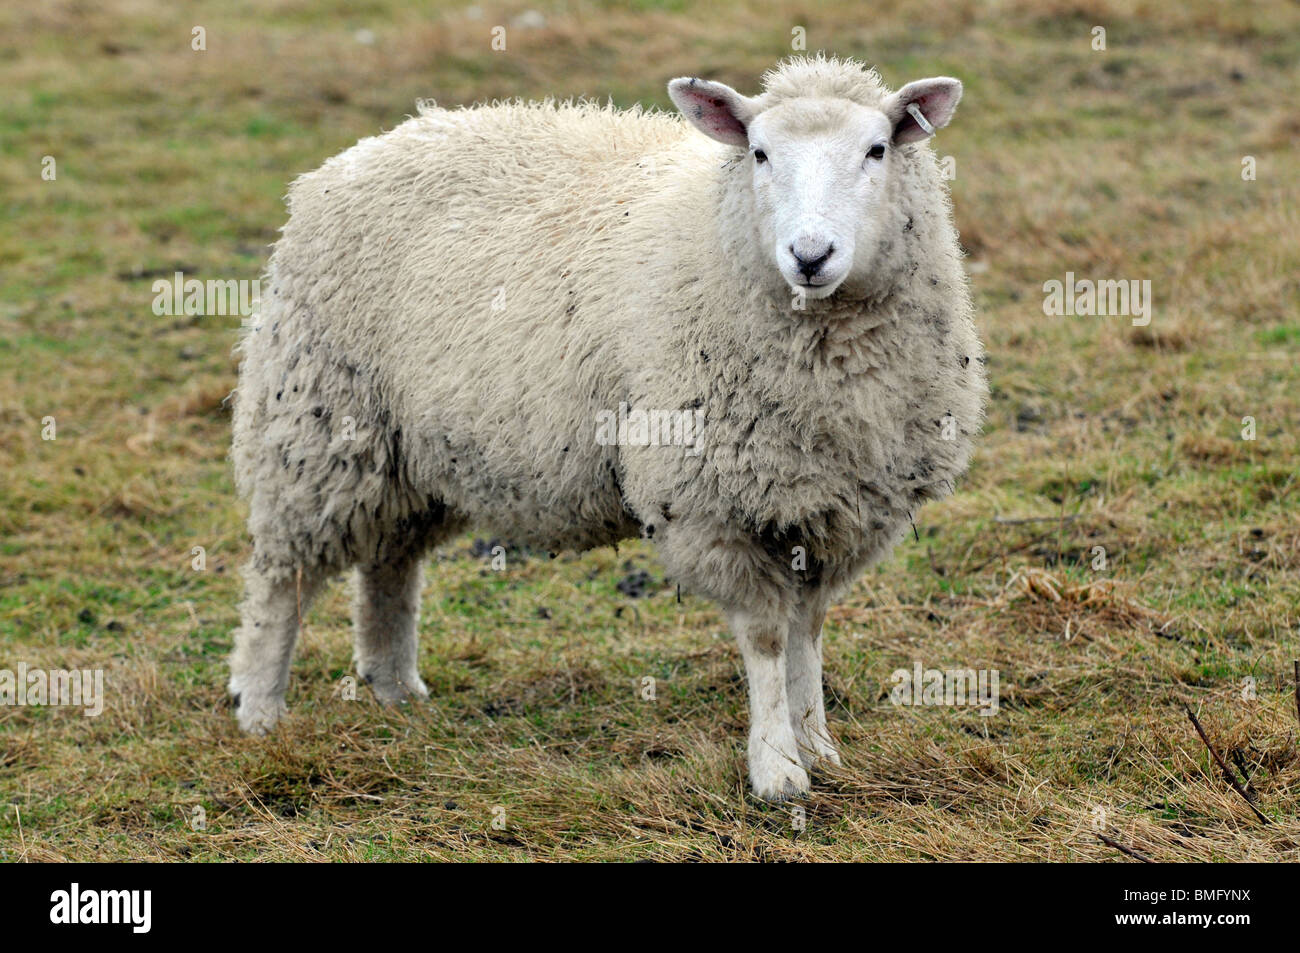 'Portland' de ovejas Foto de stock